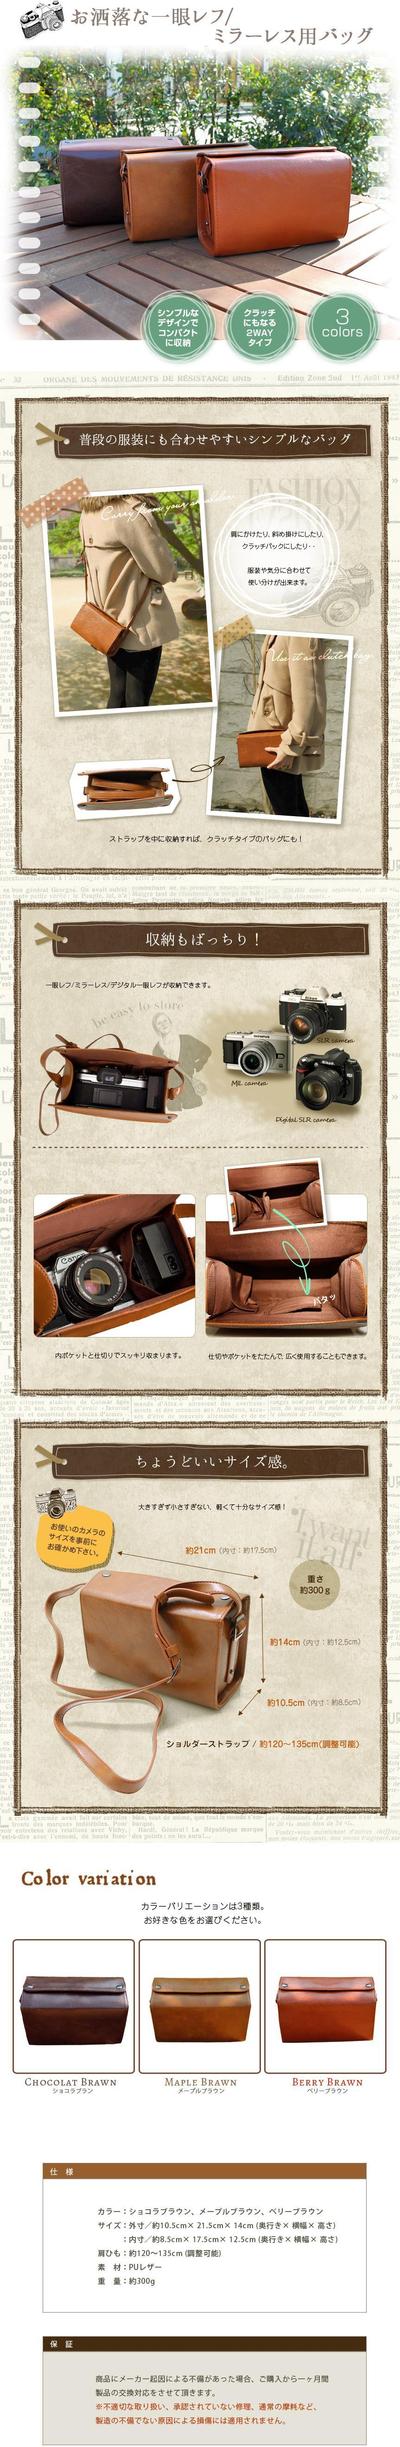 カメラバッグの商品ページ